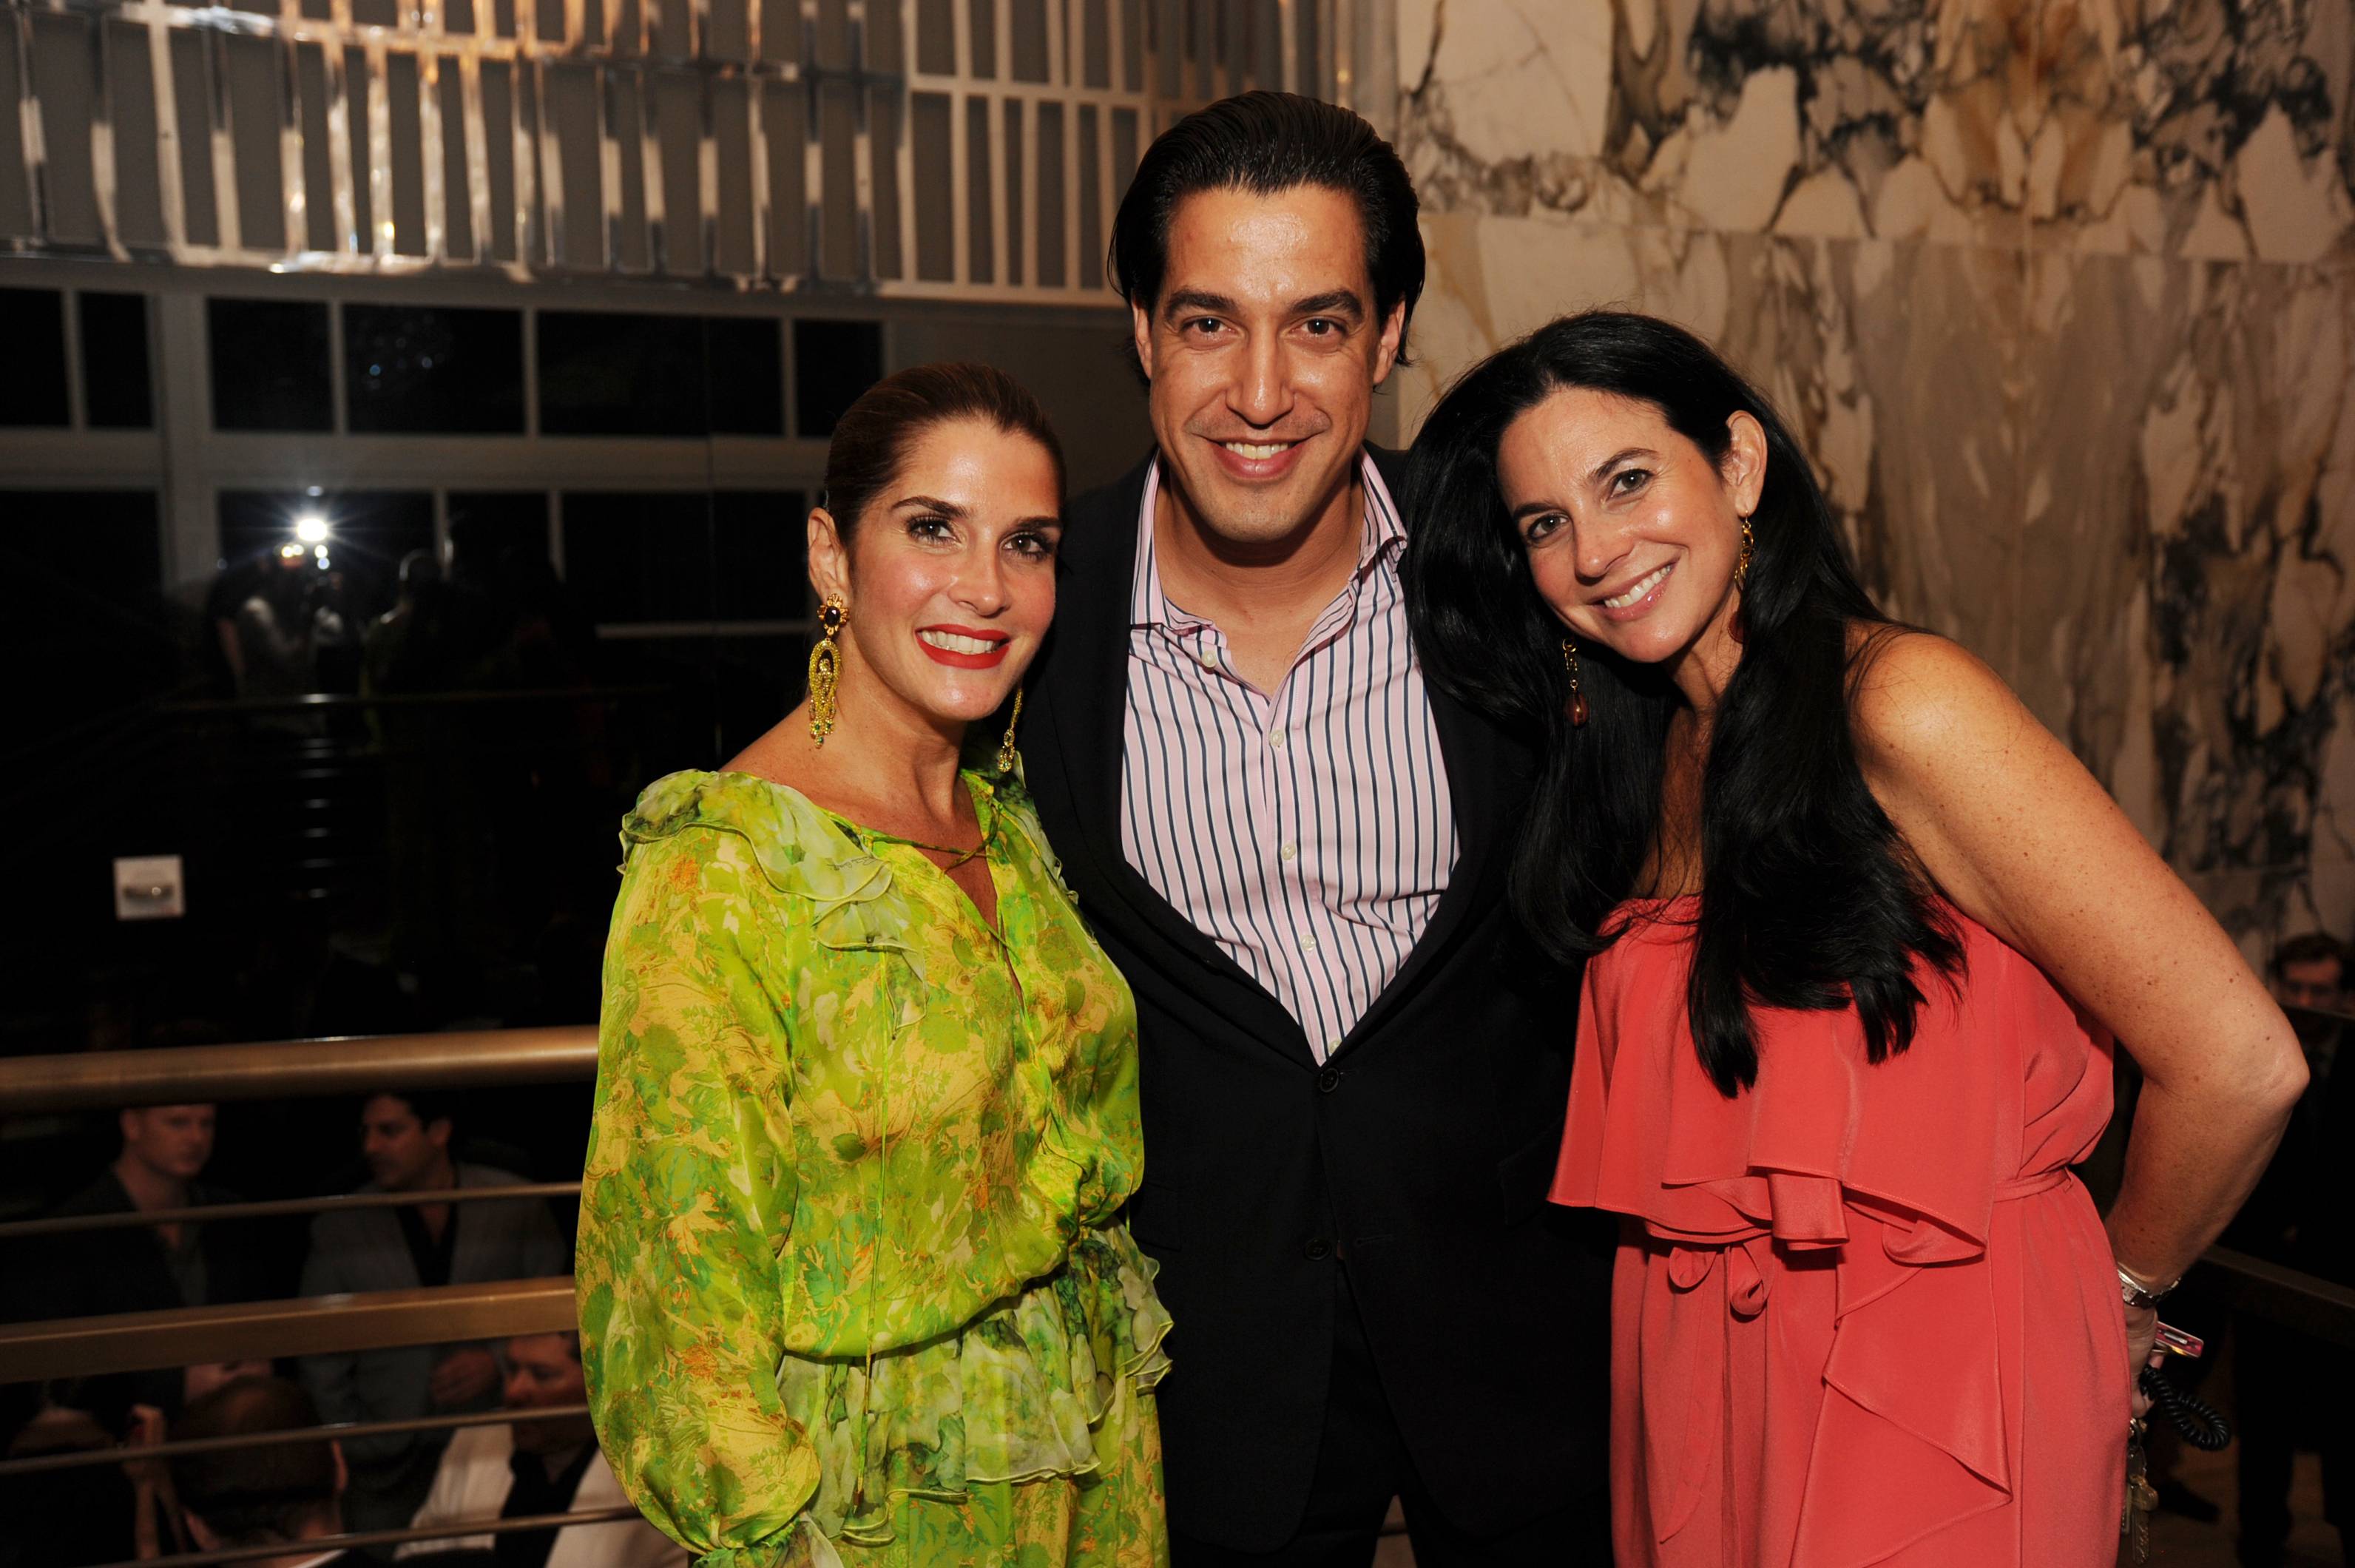 Isabella Holguin, Andres Asion and Catalina Martucci at the Paramount Bay Grand Opening